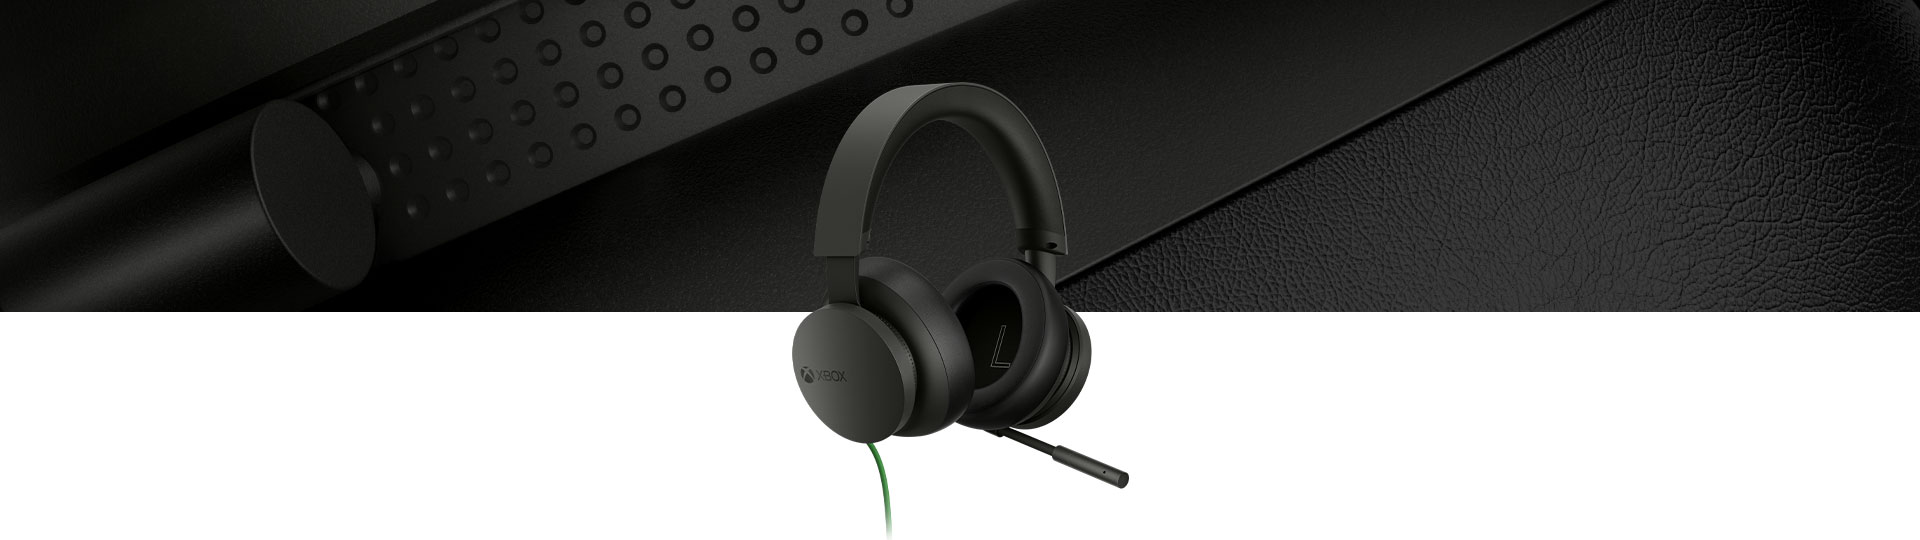 Xbox Stereo Headset med et nærbillede af headsettet i baggrunden